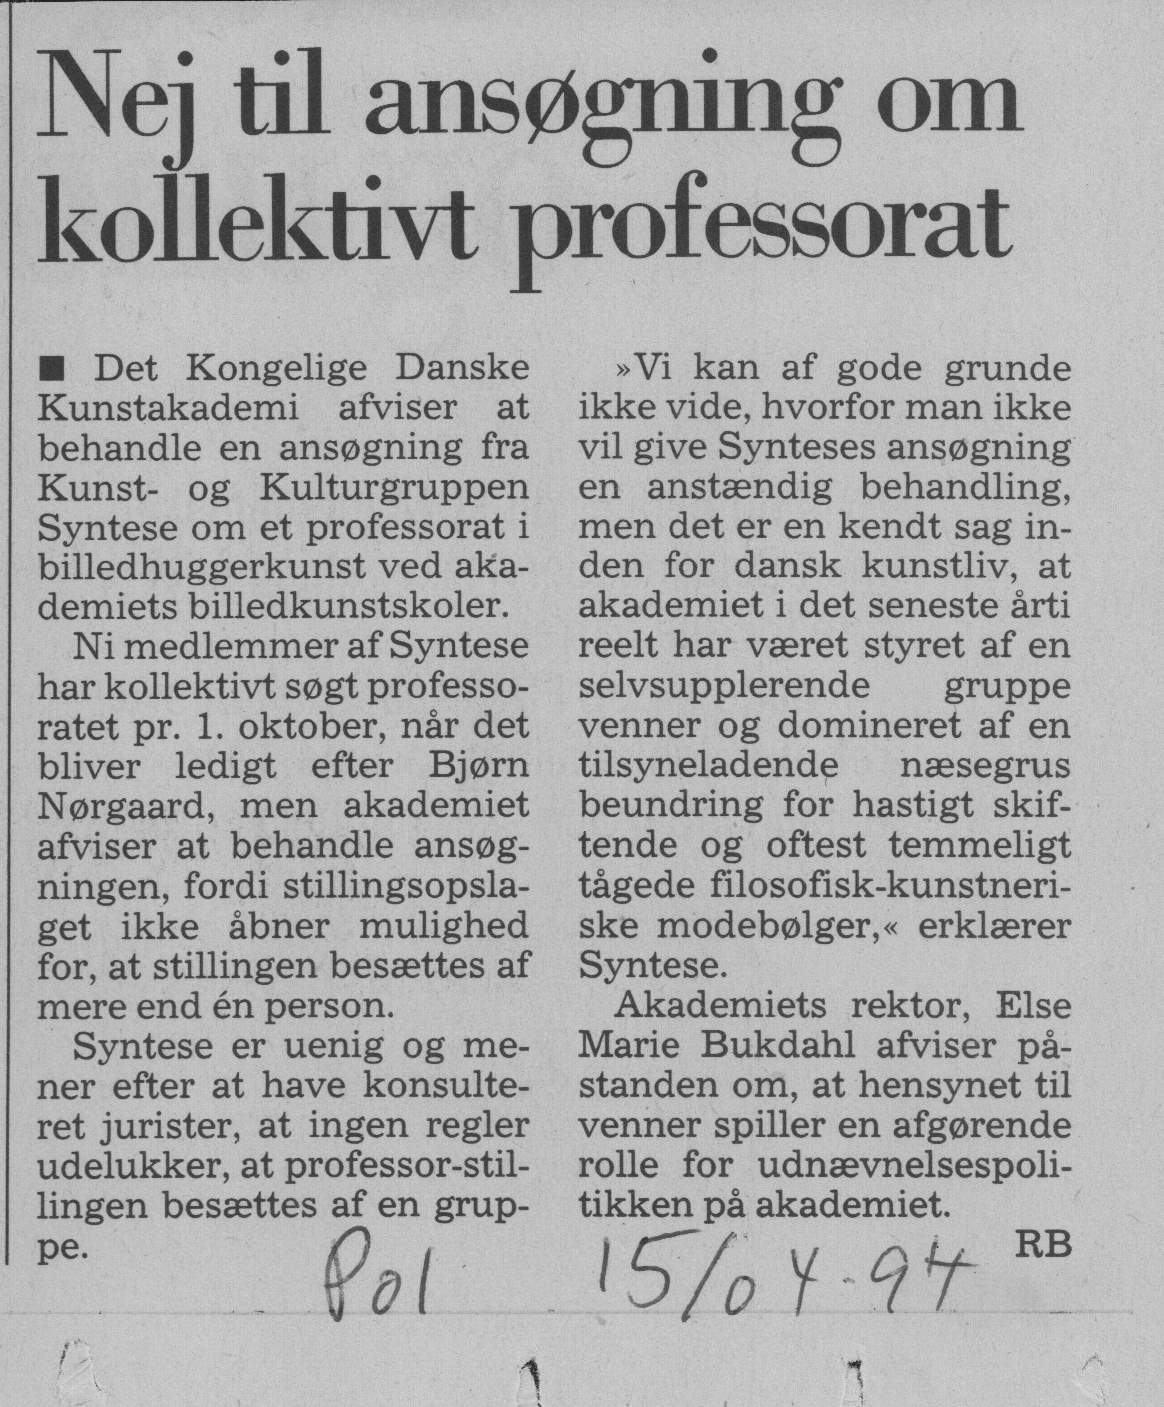 Nej til ansøgning om kollektivt professorat. Omtale (Kollektivt professorat 1994). RB. Politikken. Medio april 1994.